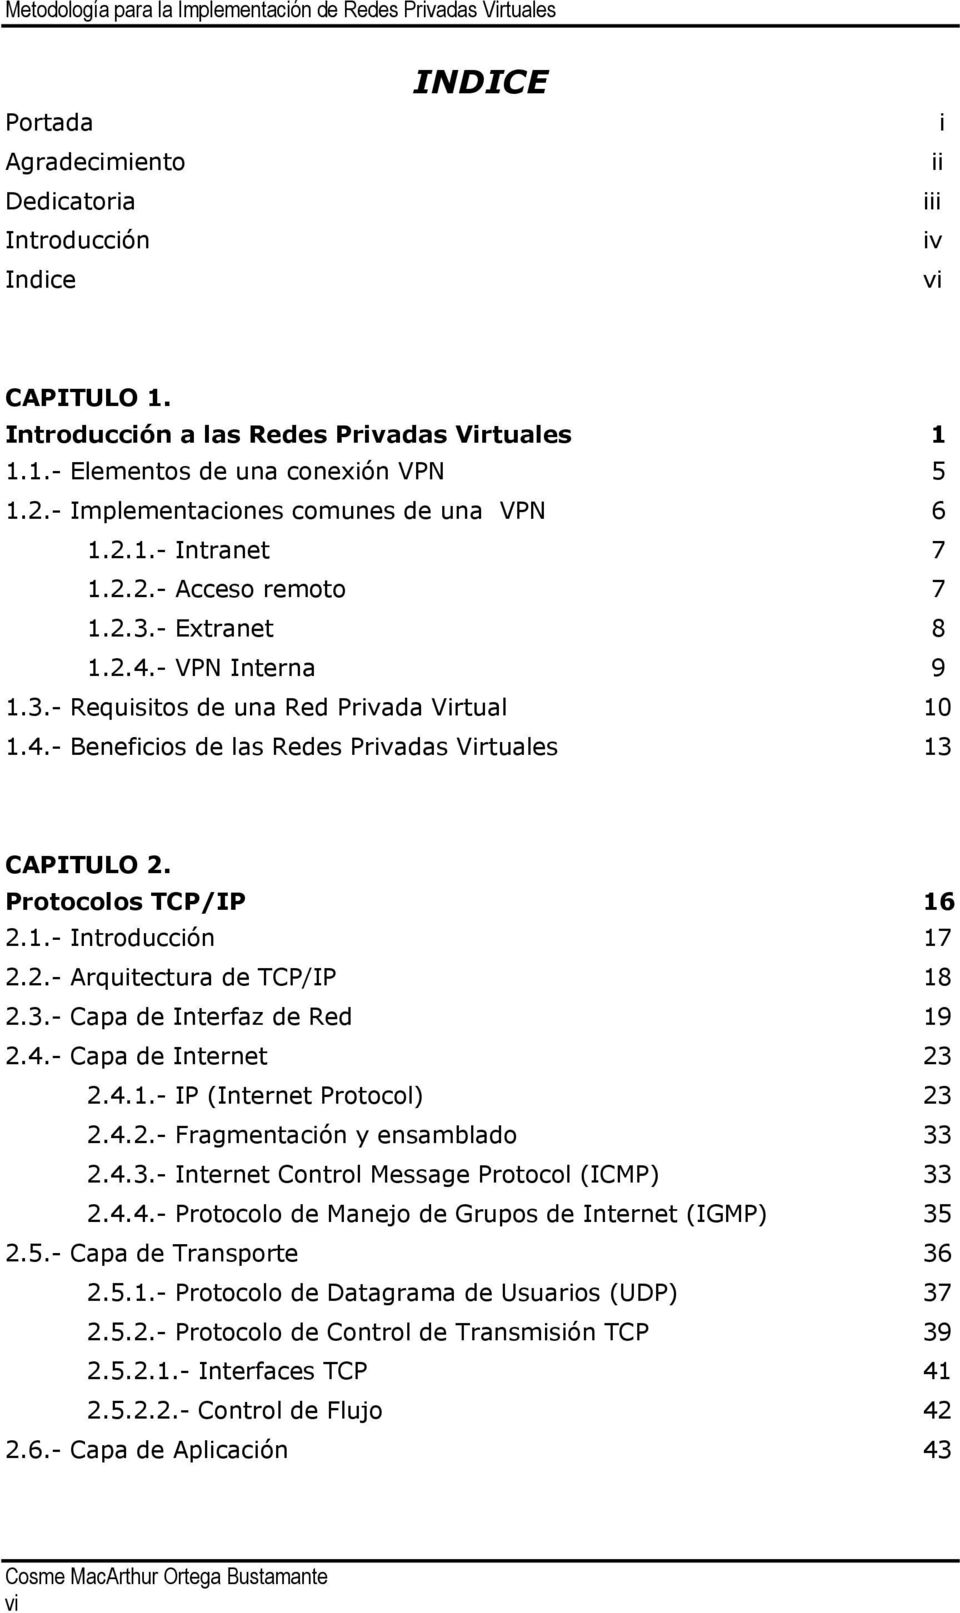 Protocolos TCP/IP 16 2.1.- Introducción 17 2.2.- Arquitectura de TCP/IP 18 2.3.- Capa de Interfaz de Red 19 2.4.- Capa de Internet 23 2.4.1.- IP (Internet Protocol) 23 2.4.2.- Fragmentación y ensamblado 33 2.